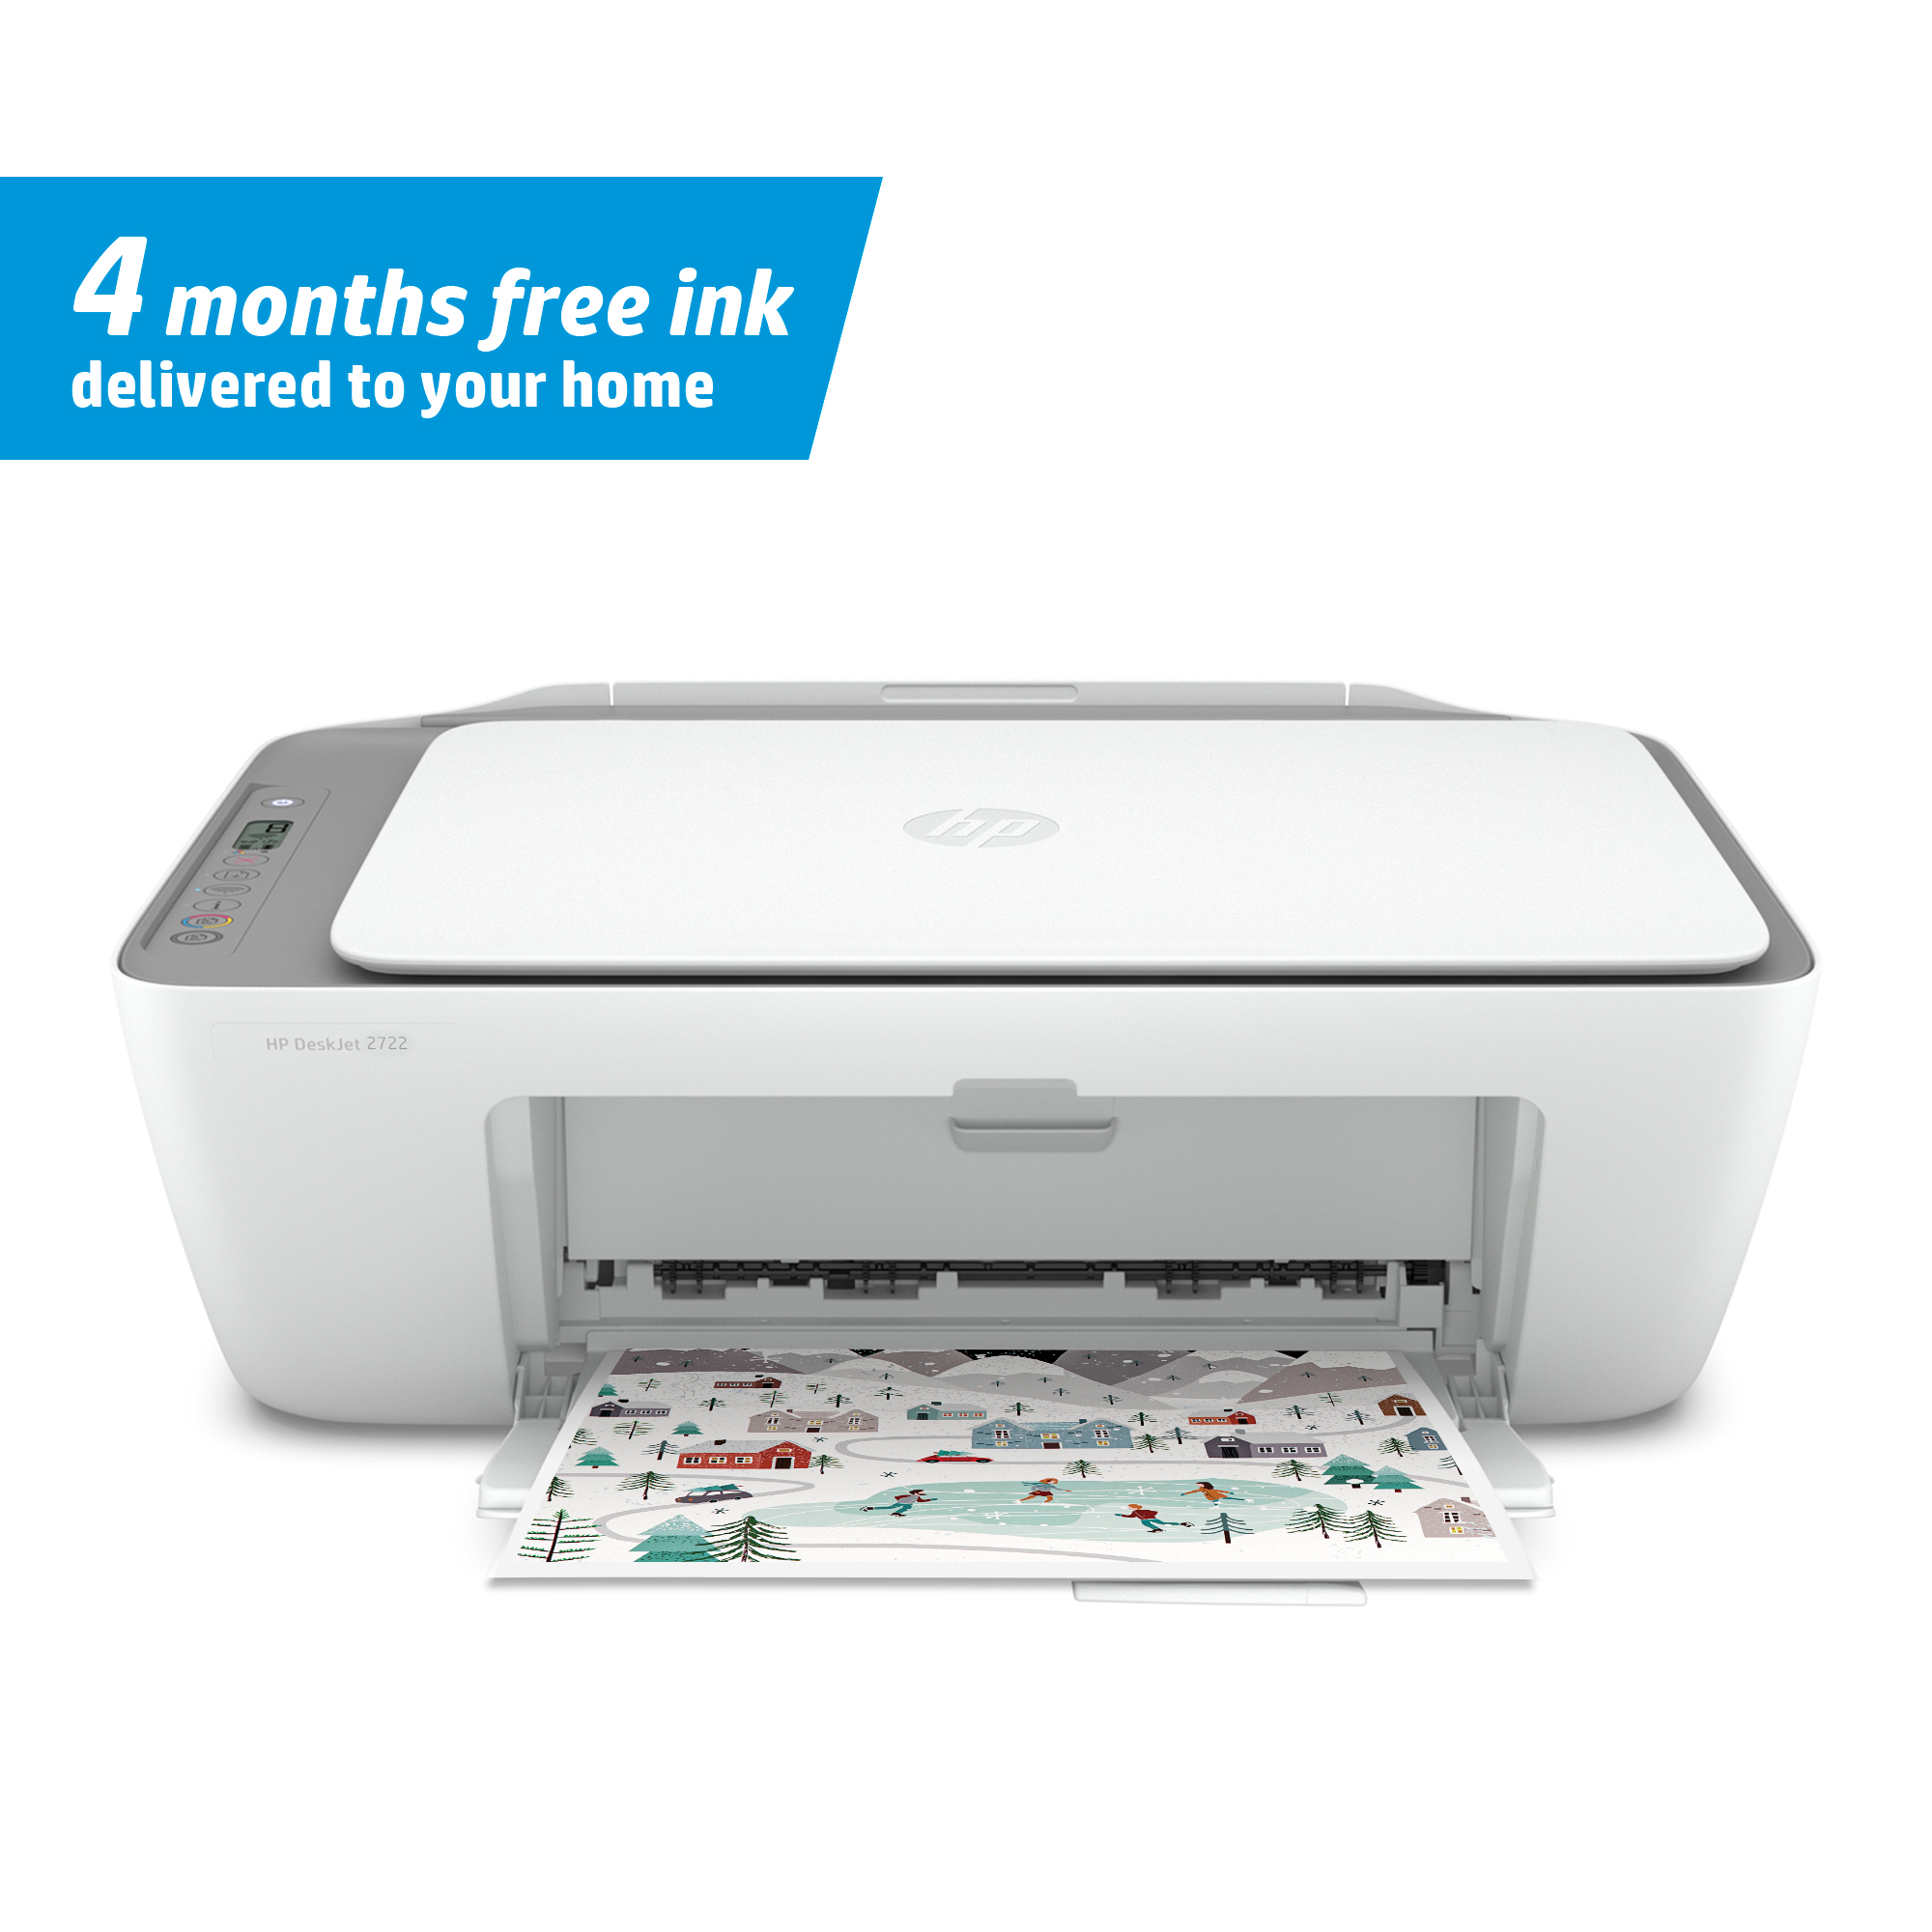 HP DeskJet 2722 All-in-One Printer, White - image 1 of 10